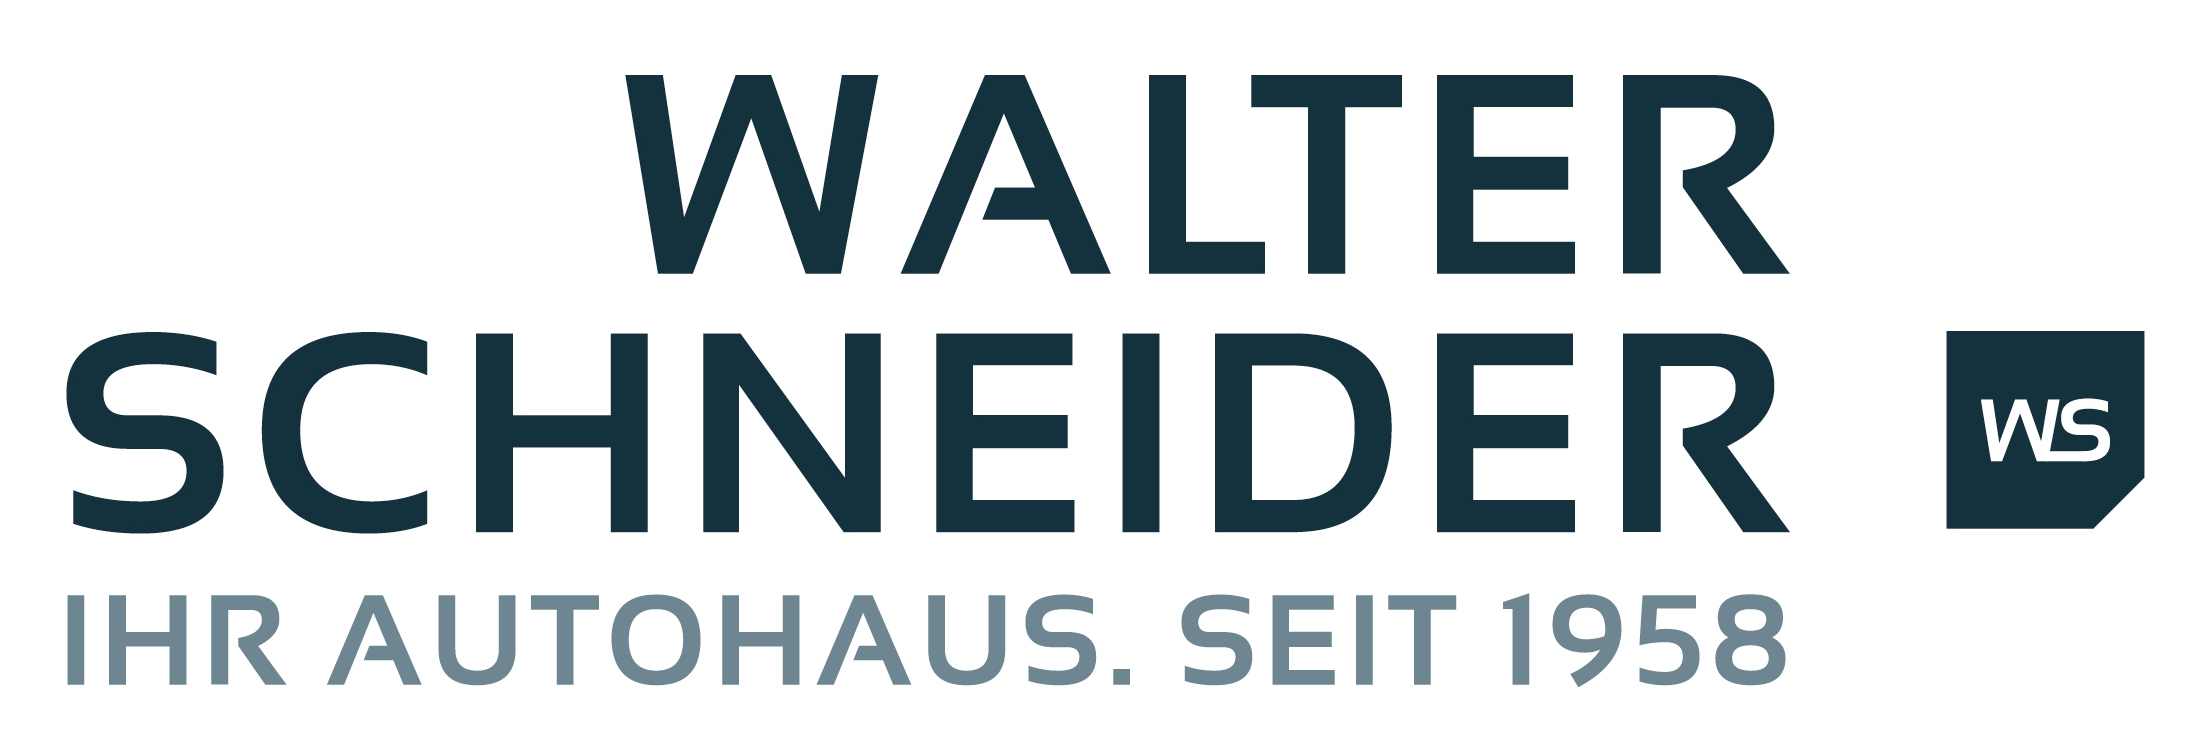 Walter Schneider GmbH & Co. KG